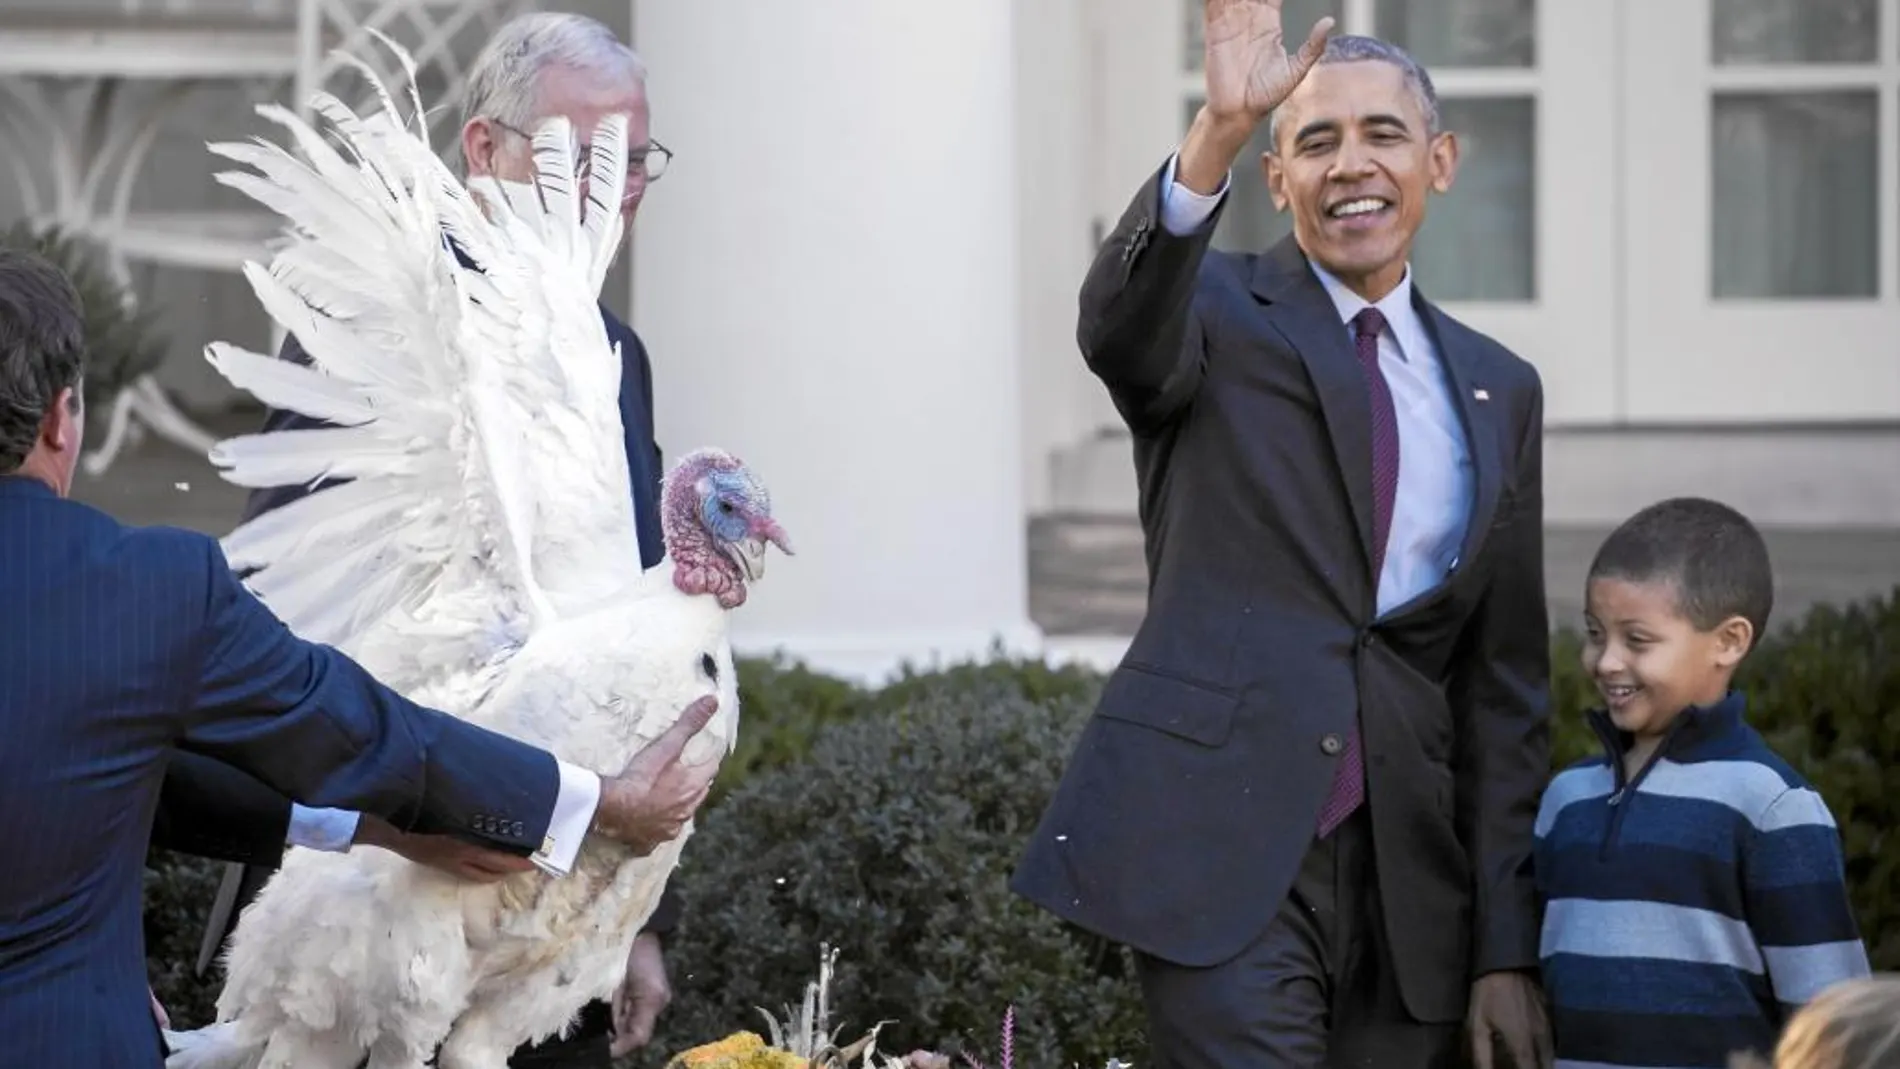 «Tater», el último pavo indultado. En su último Día de Acción de Gracias como presidente de Estados Unidos, Barack Obama cumplió ayer con la tradición de indultar un pavo en los jardines de la Casa Blanca